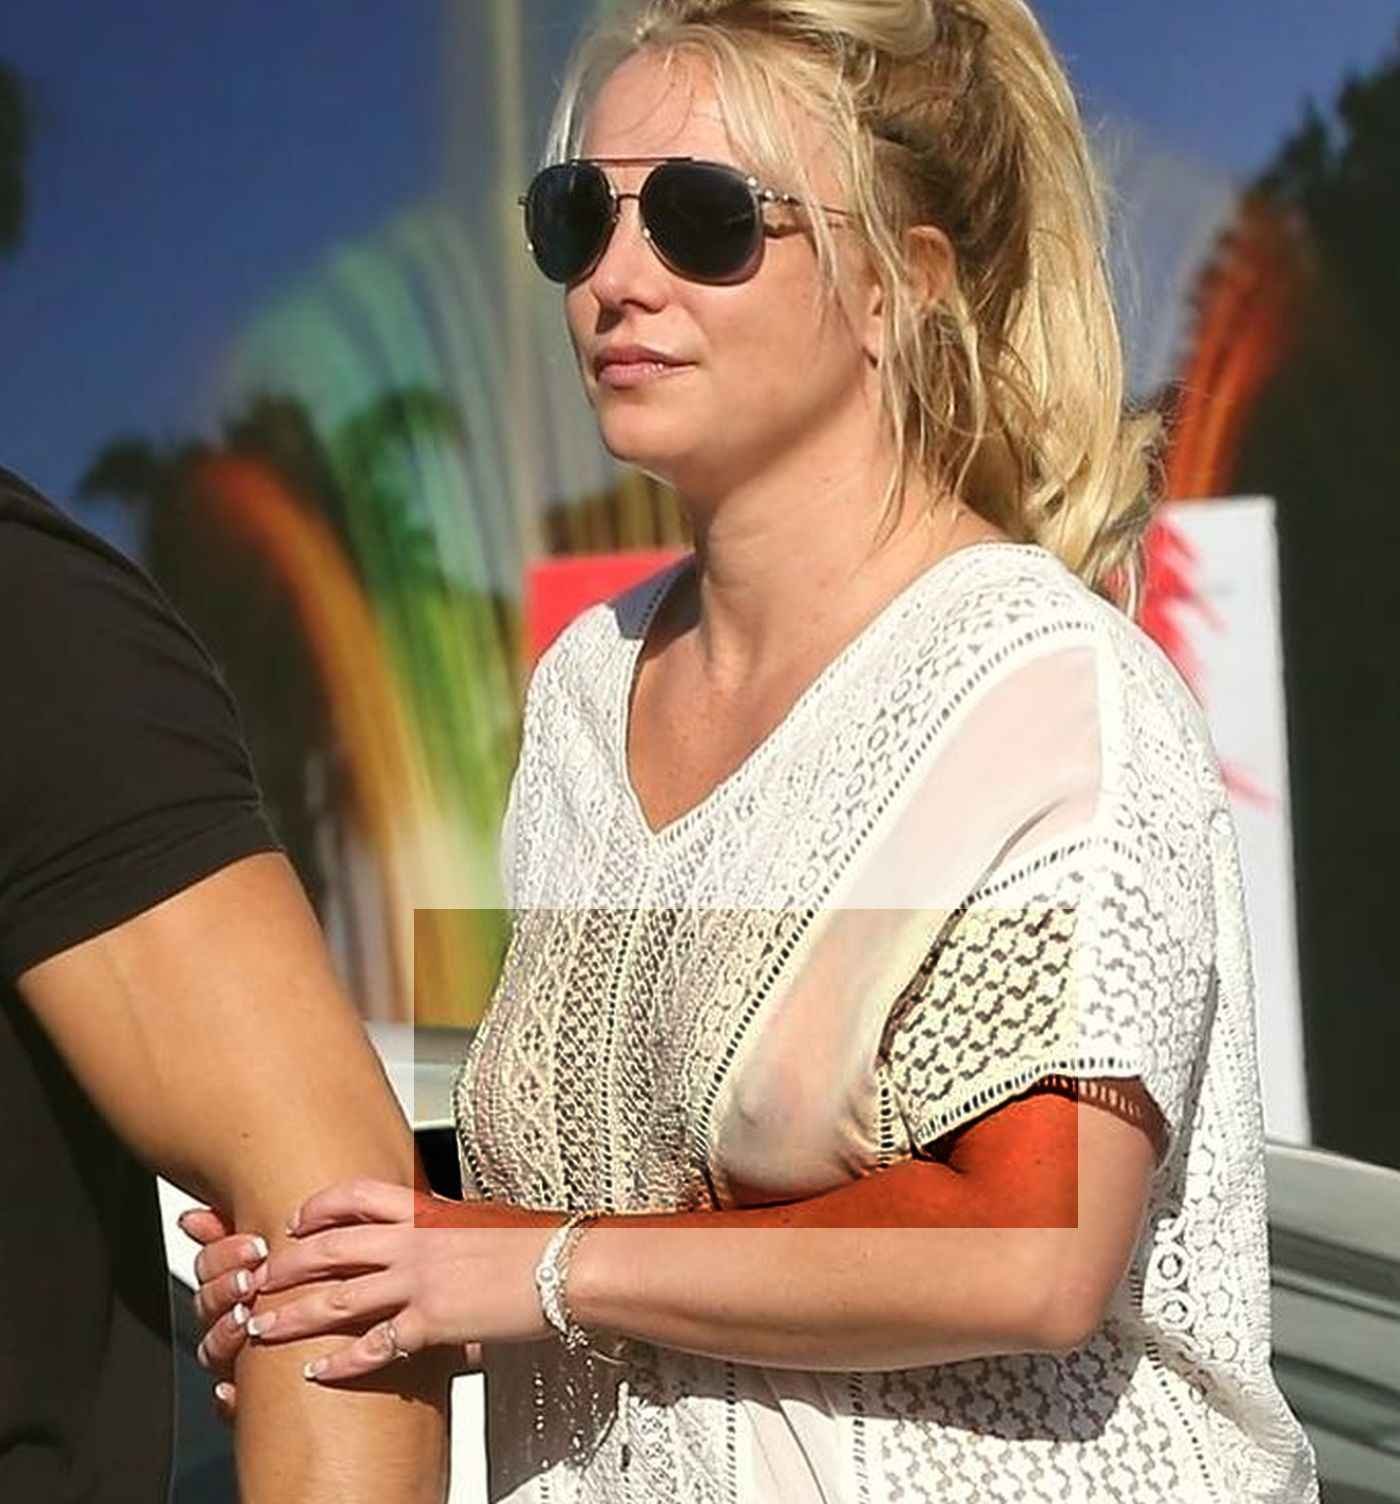 Britney Spears seins nus sous son chemisier transparent, la suite